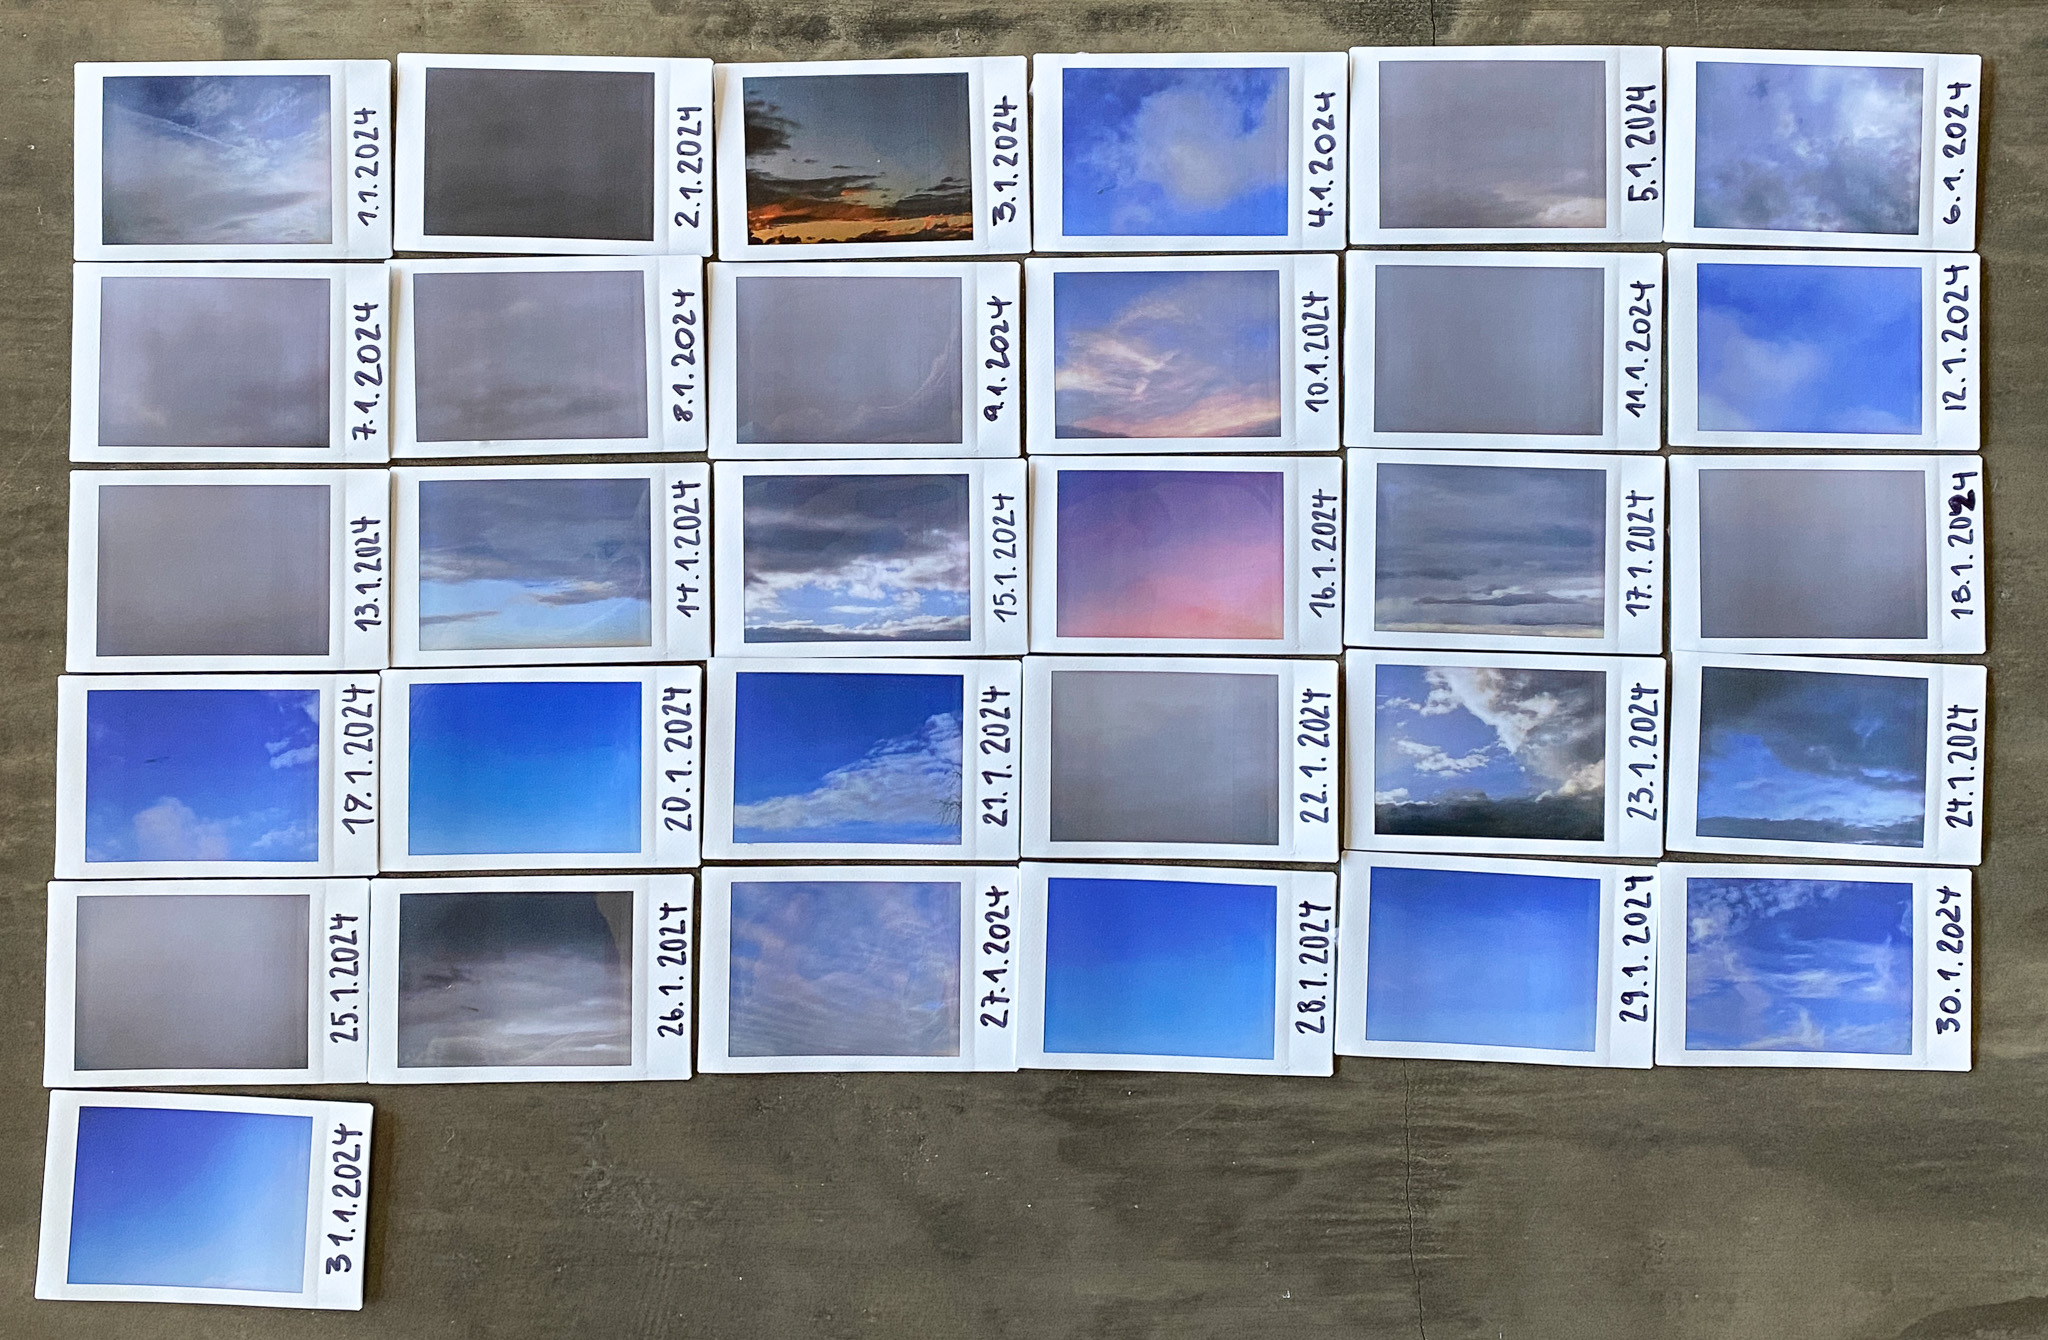 Chronologische Anordnung der Polaroidaufnahmen vom Himmel im Januar